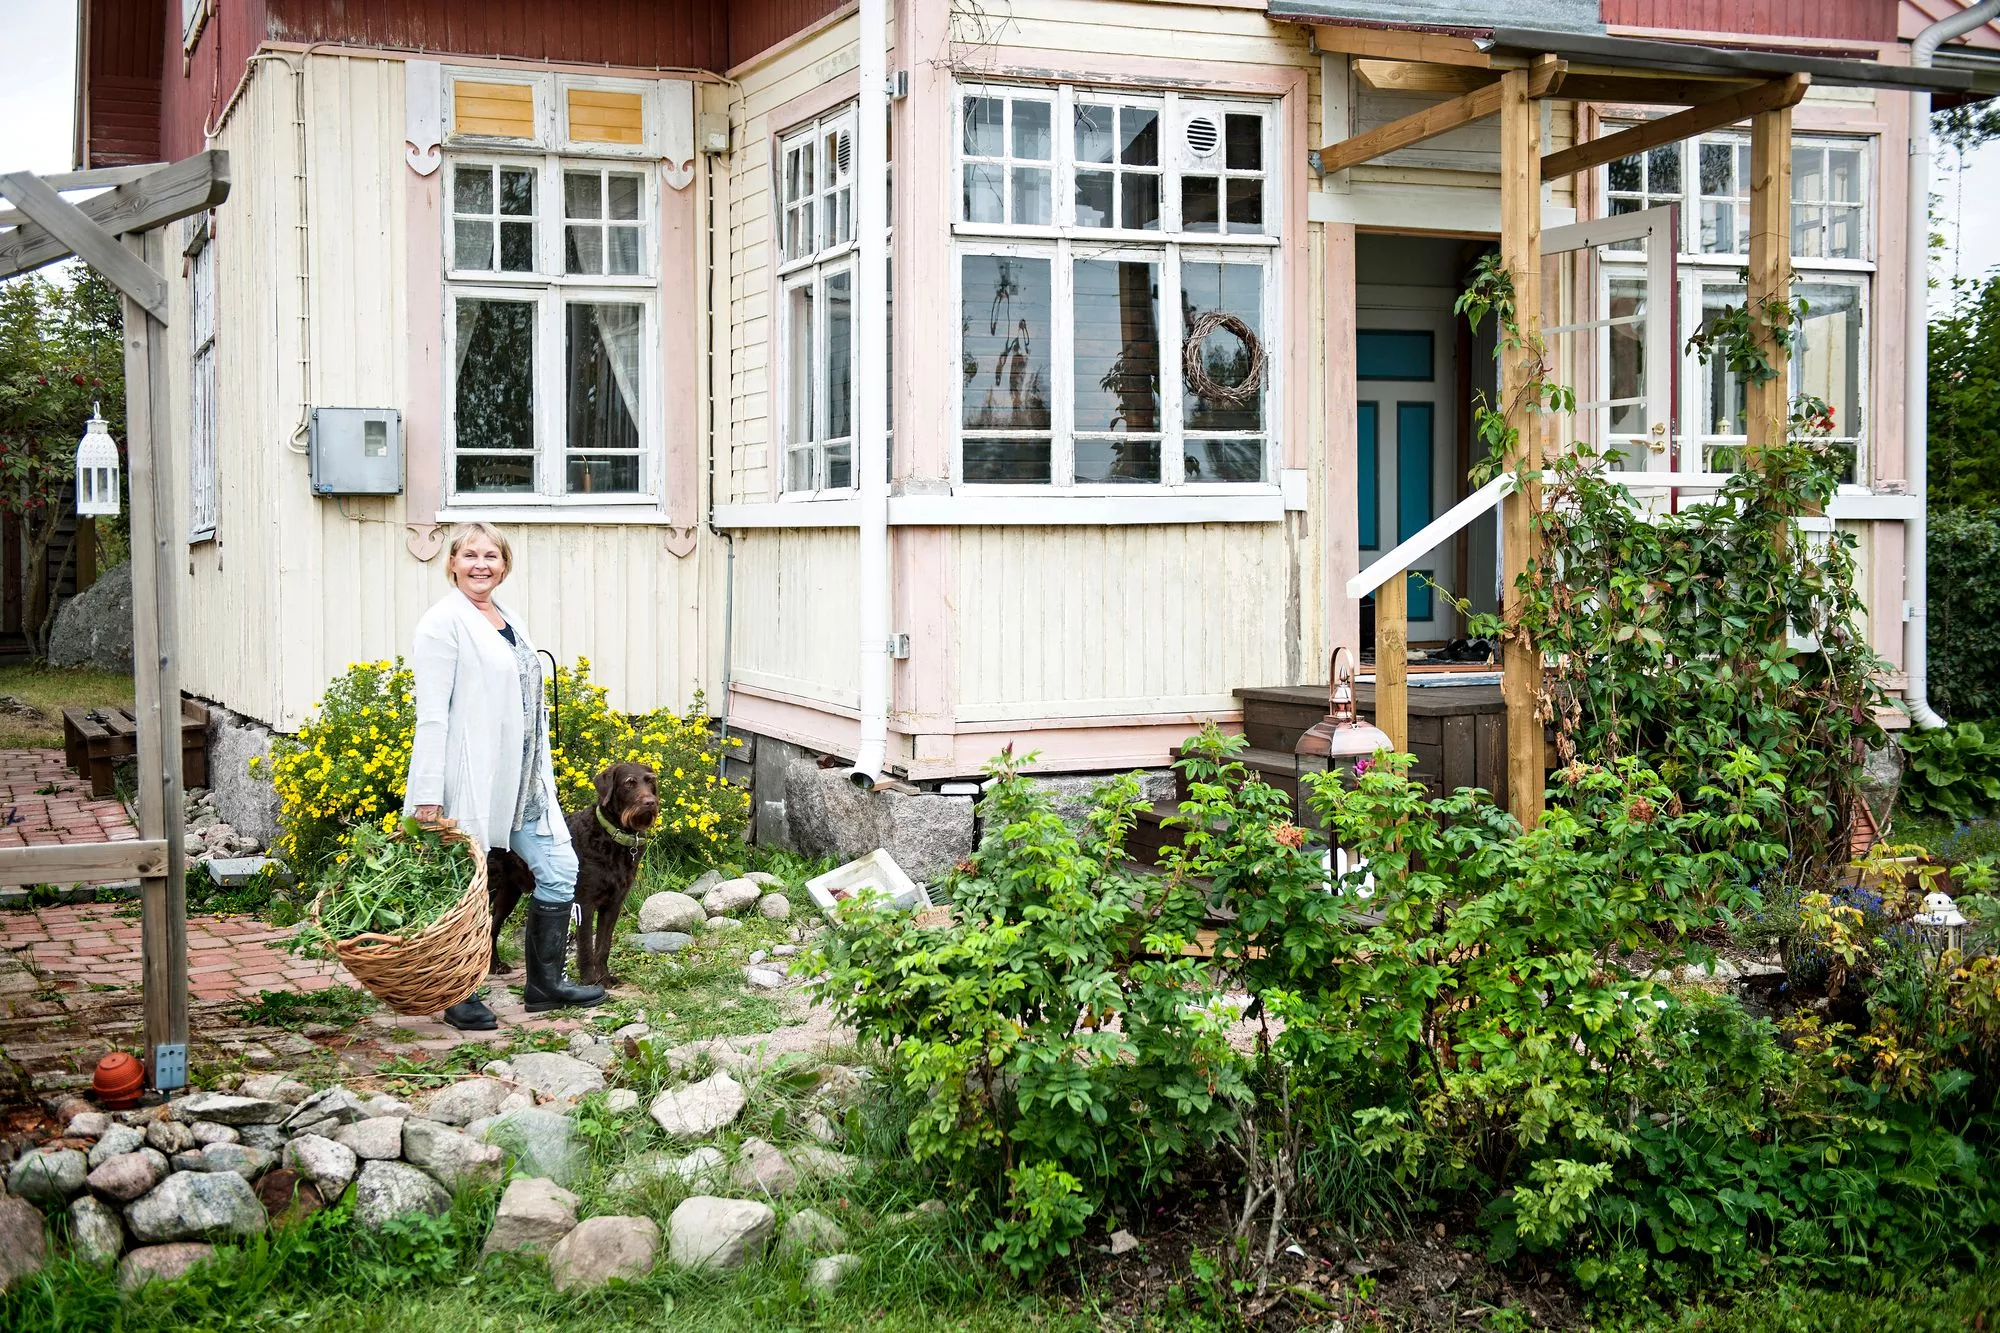 Ulla nauttii vapaa-ajan kodistaan. Talossa ja puutarhassa riittää mielekästä puuhaa.